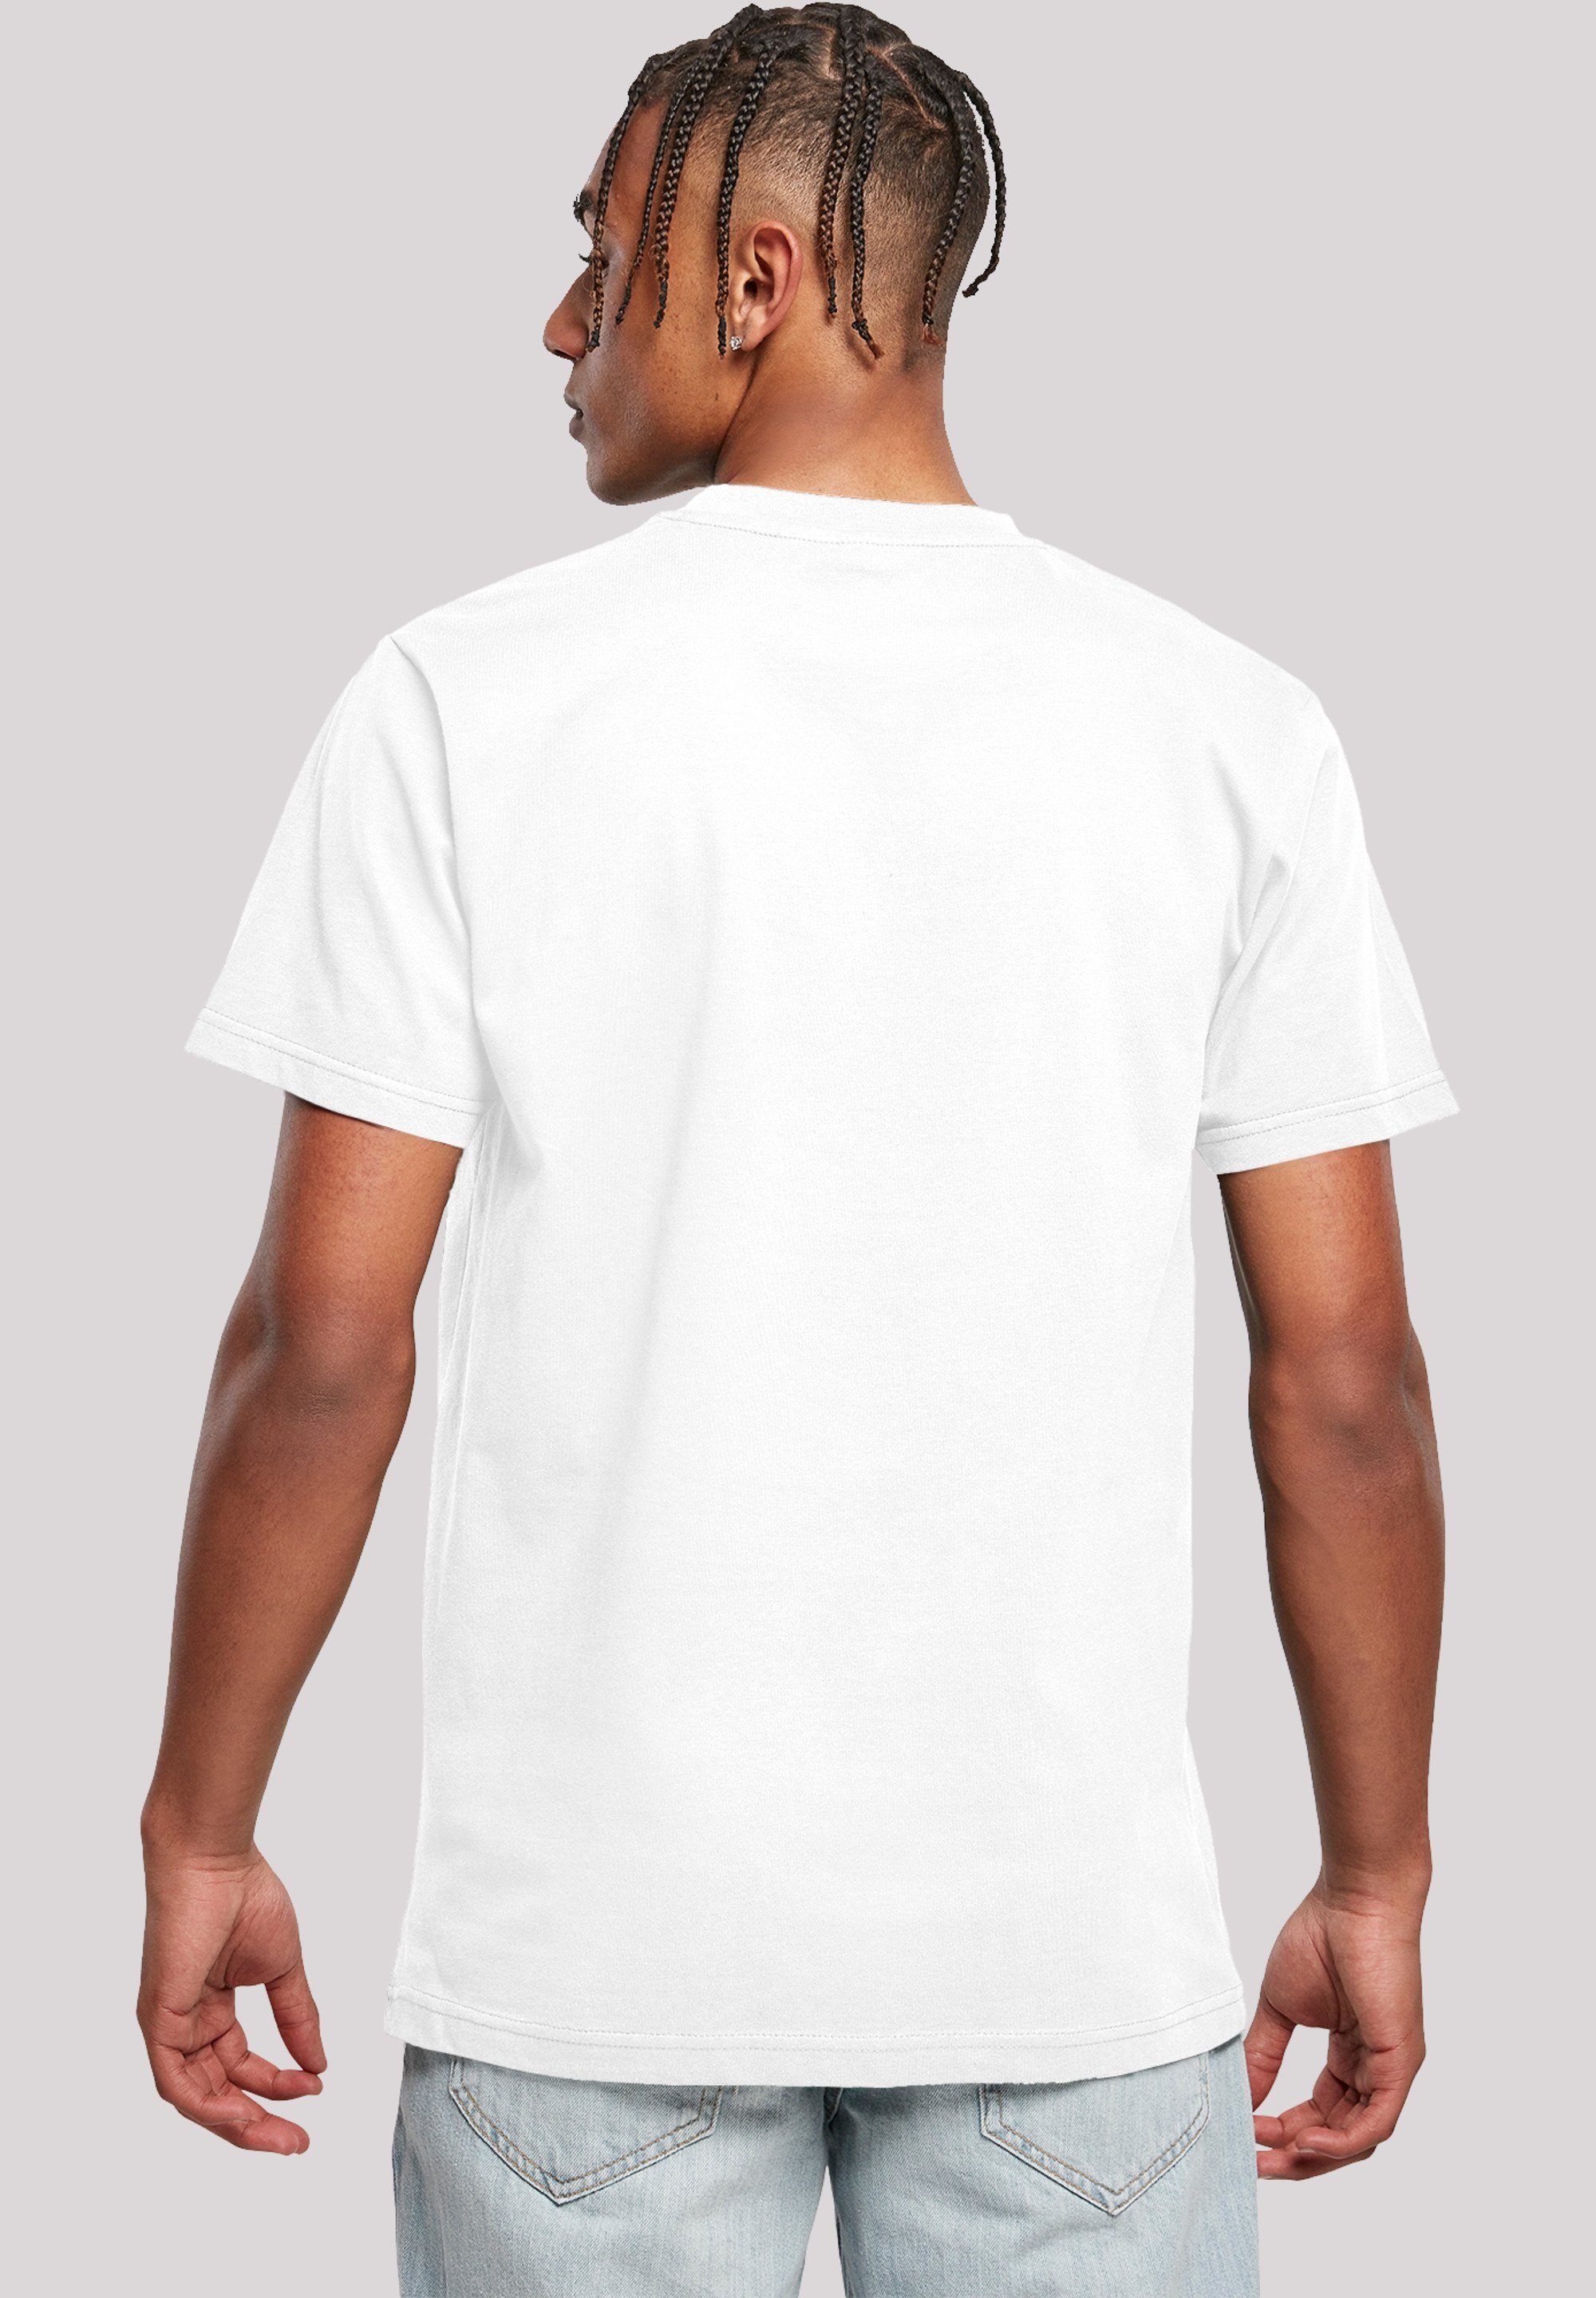 F4NT4STIC T-Shirt Rick Merch,Regular-Fit,Basic,Bedruckt Herren,Premium Portal and weiß Morty